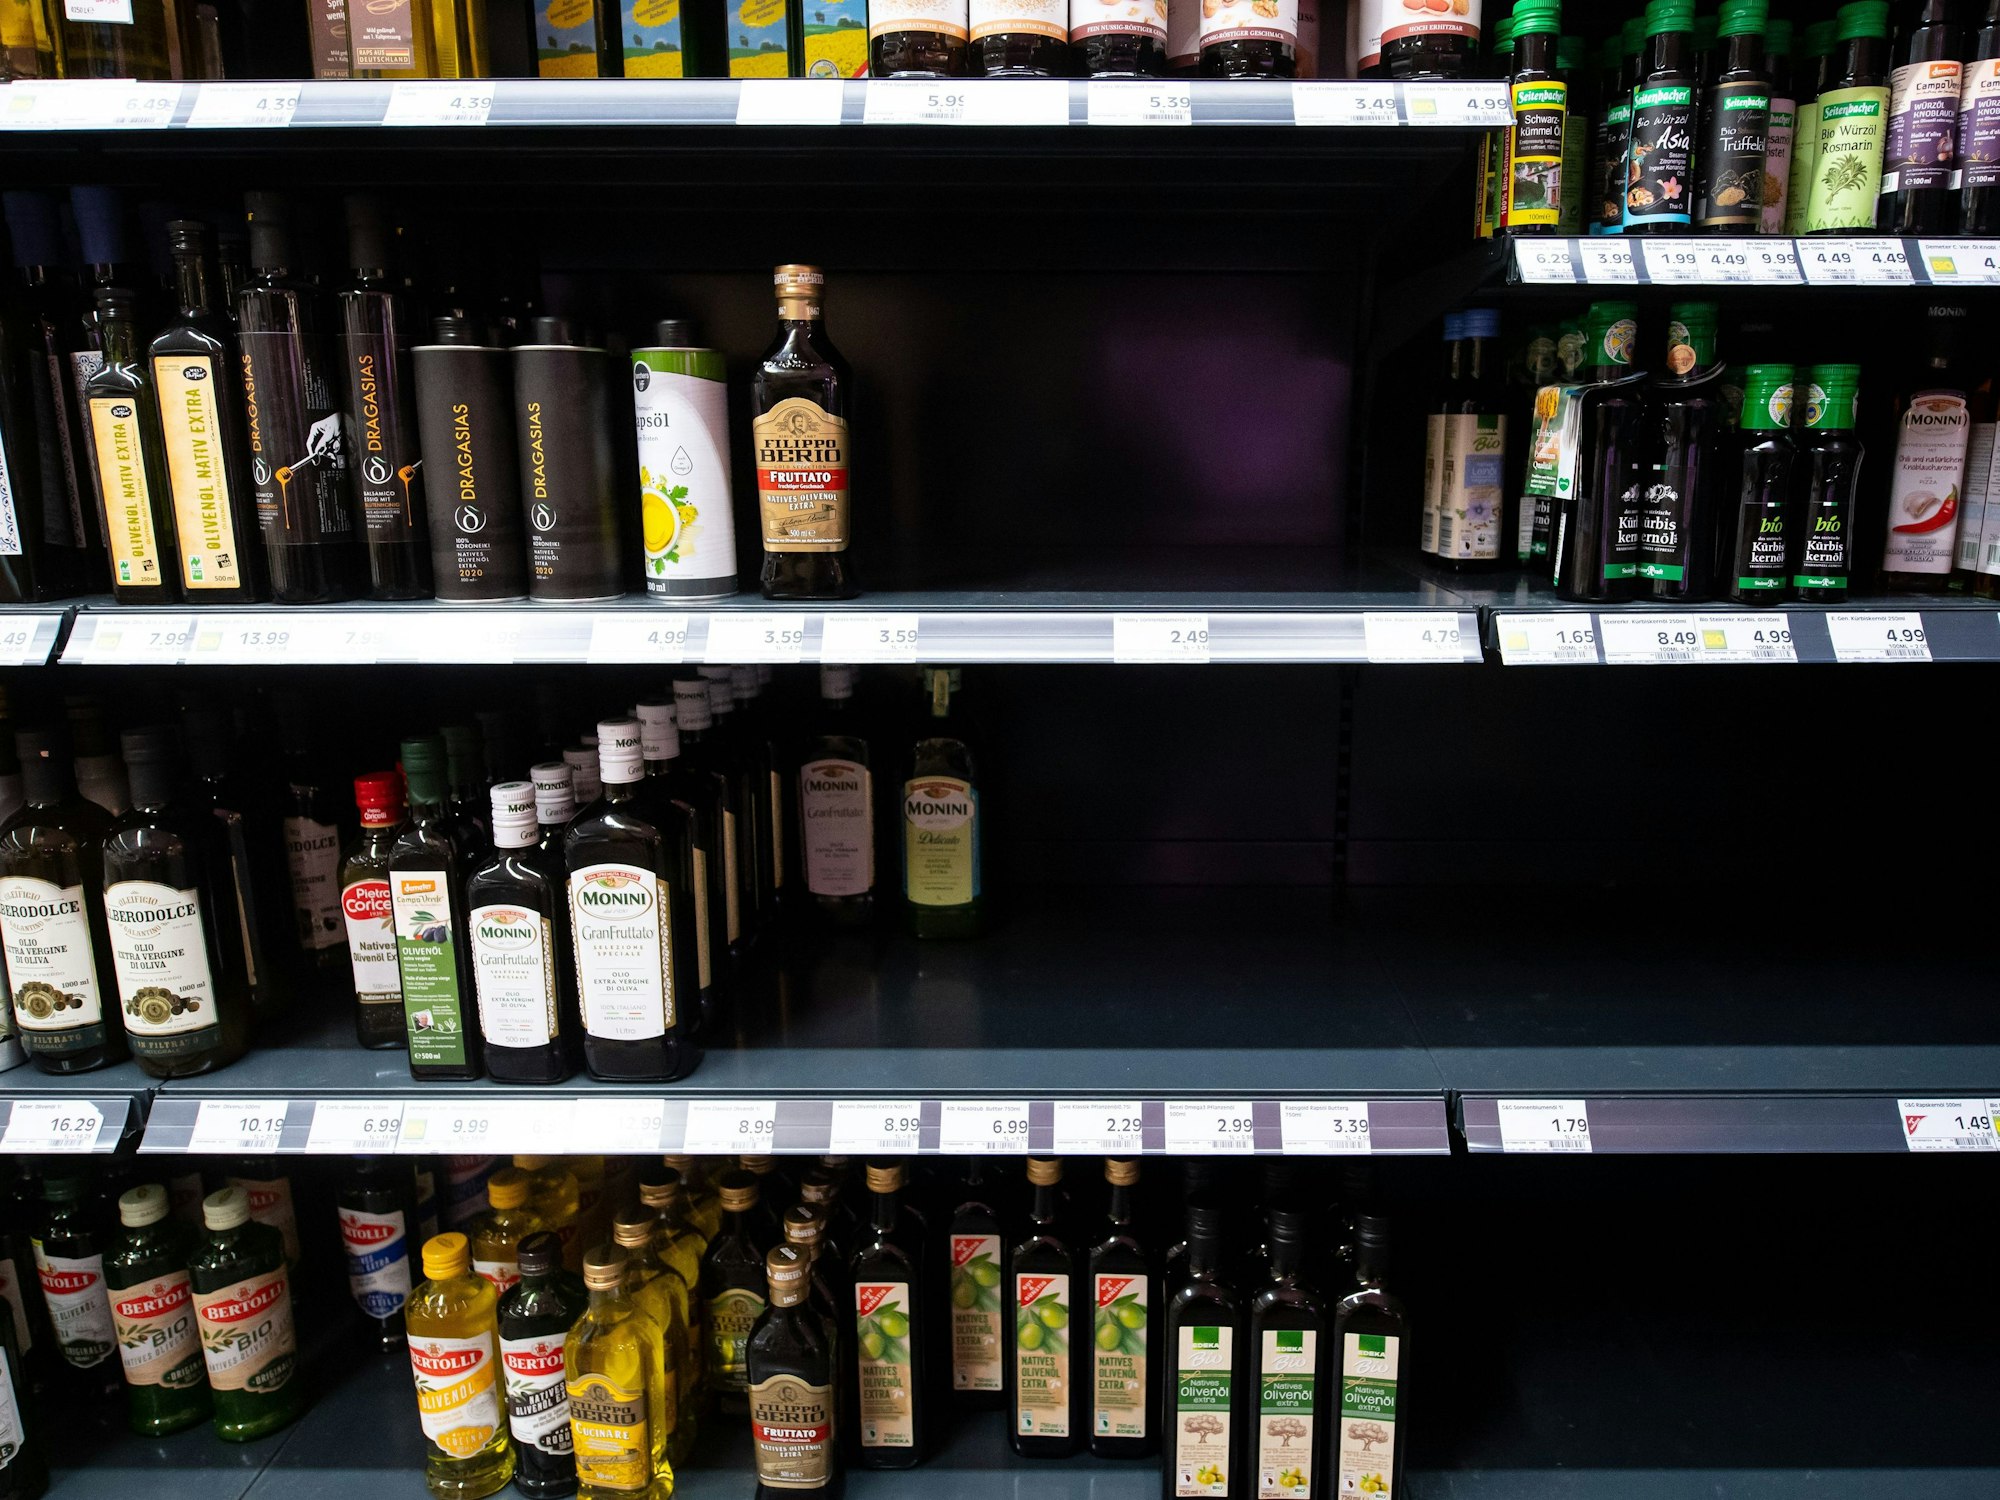 Flaschen mit Öl stehen in einem Regal in einem Supermarkt.